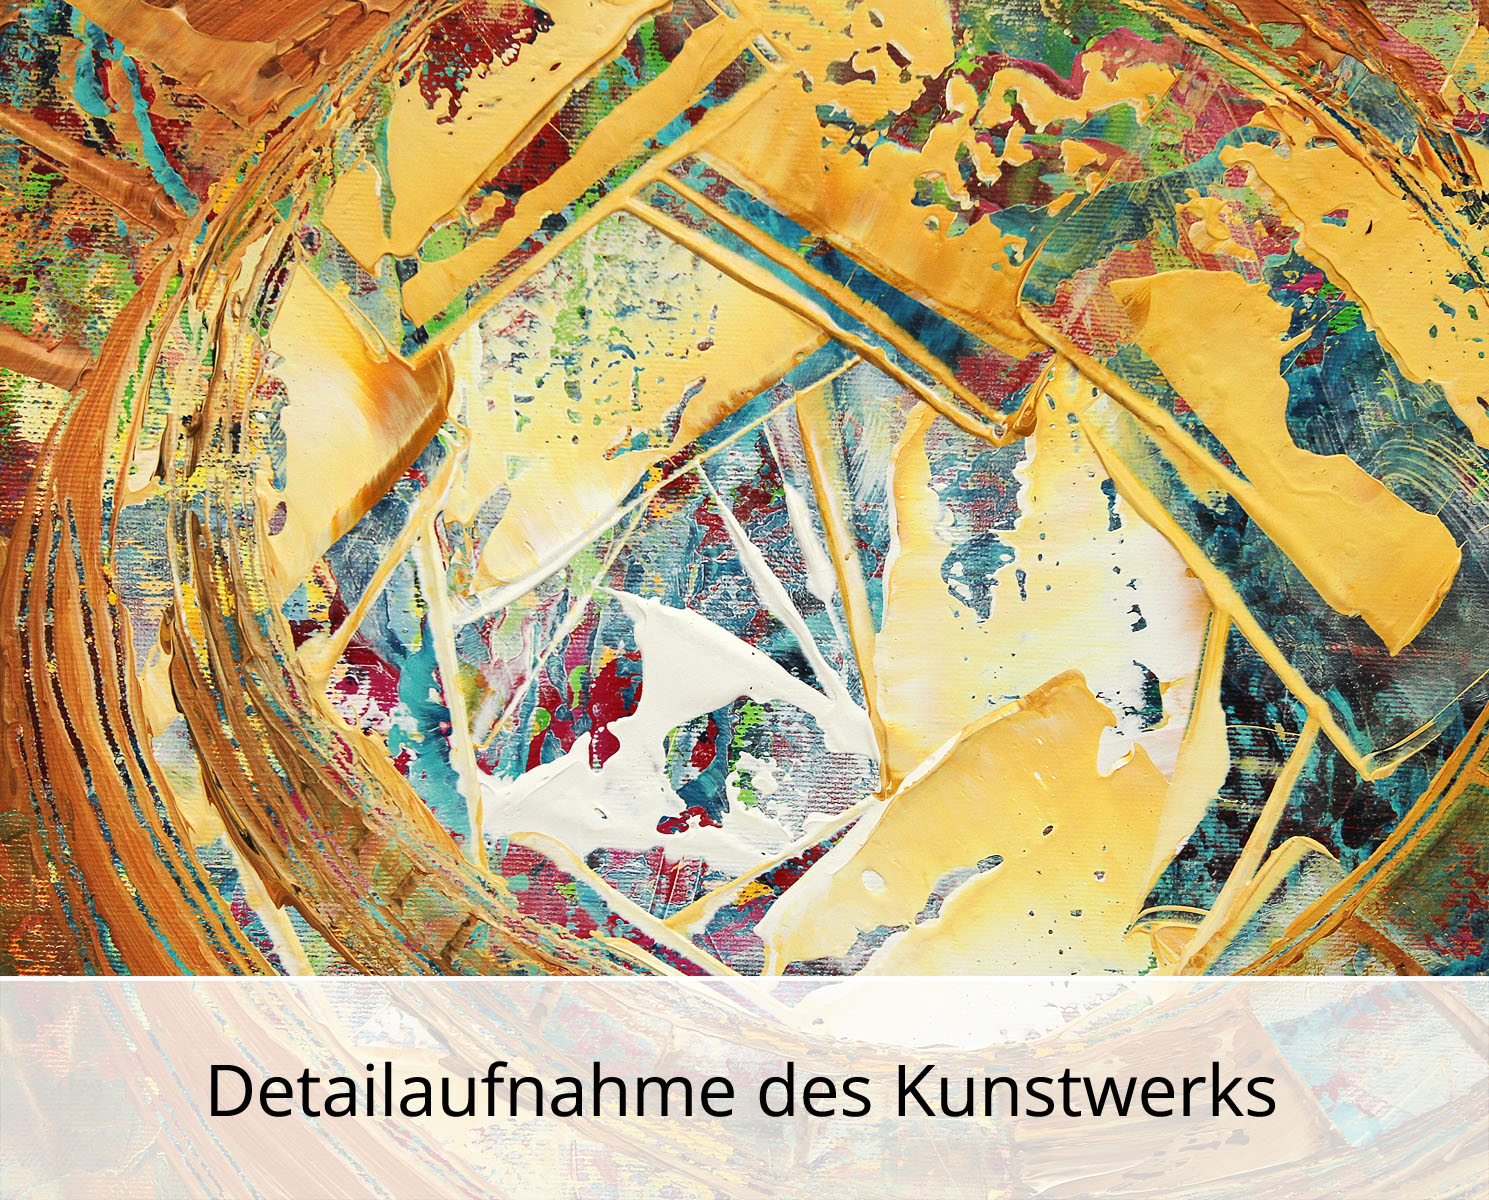 R. König: "Lichtverwirbelung II", abstraktes Originalgemälde (Unikat)